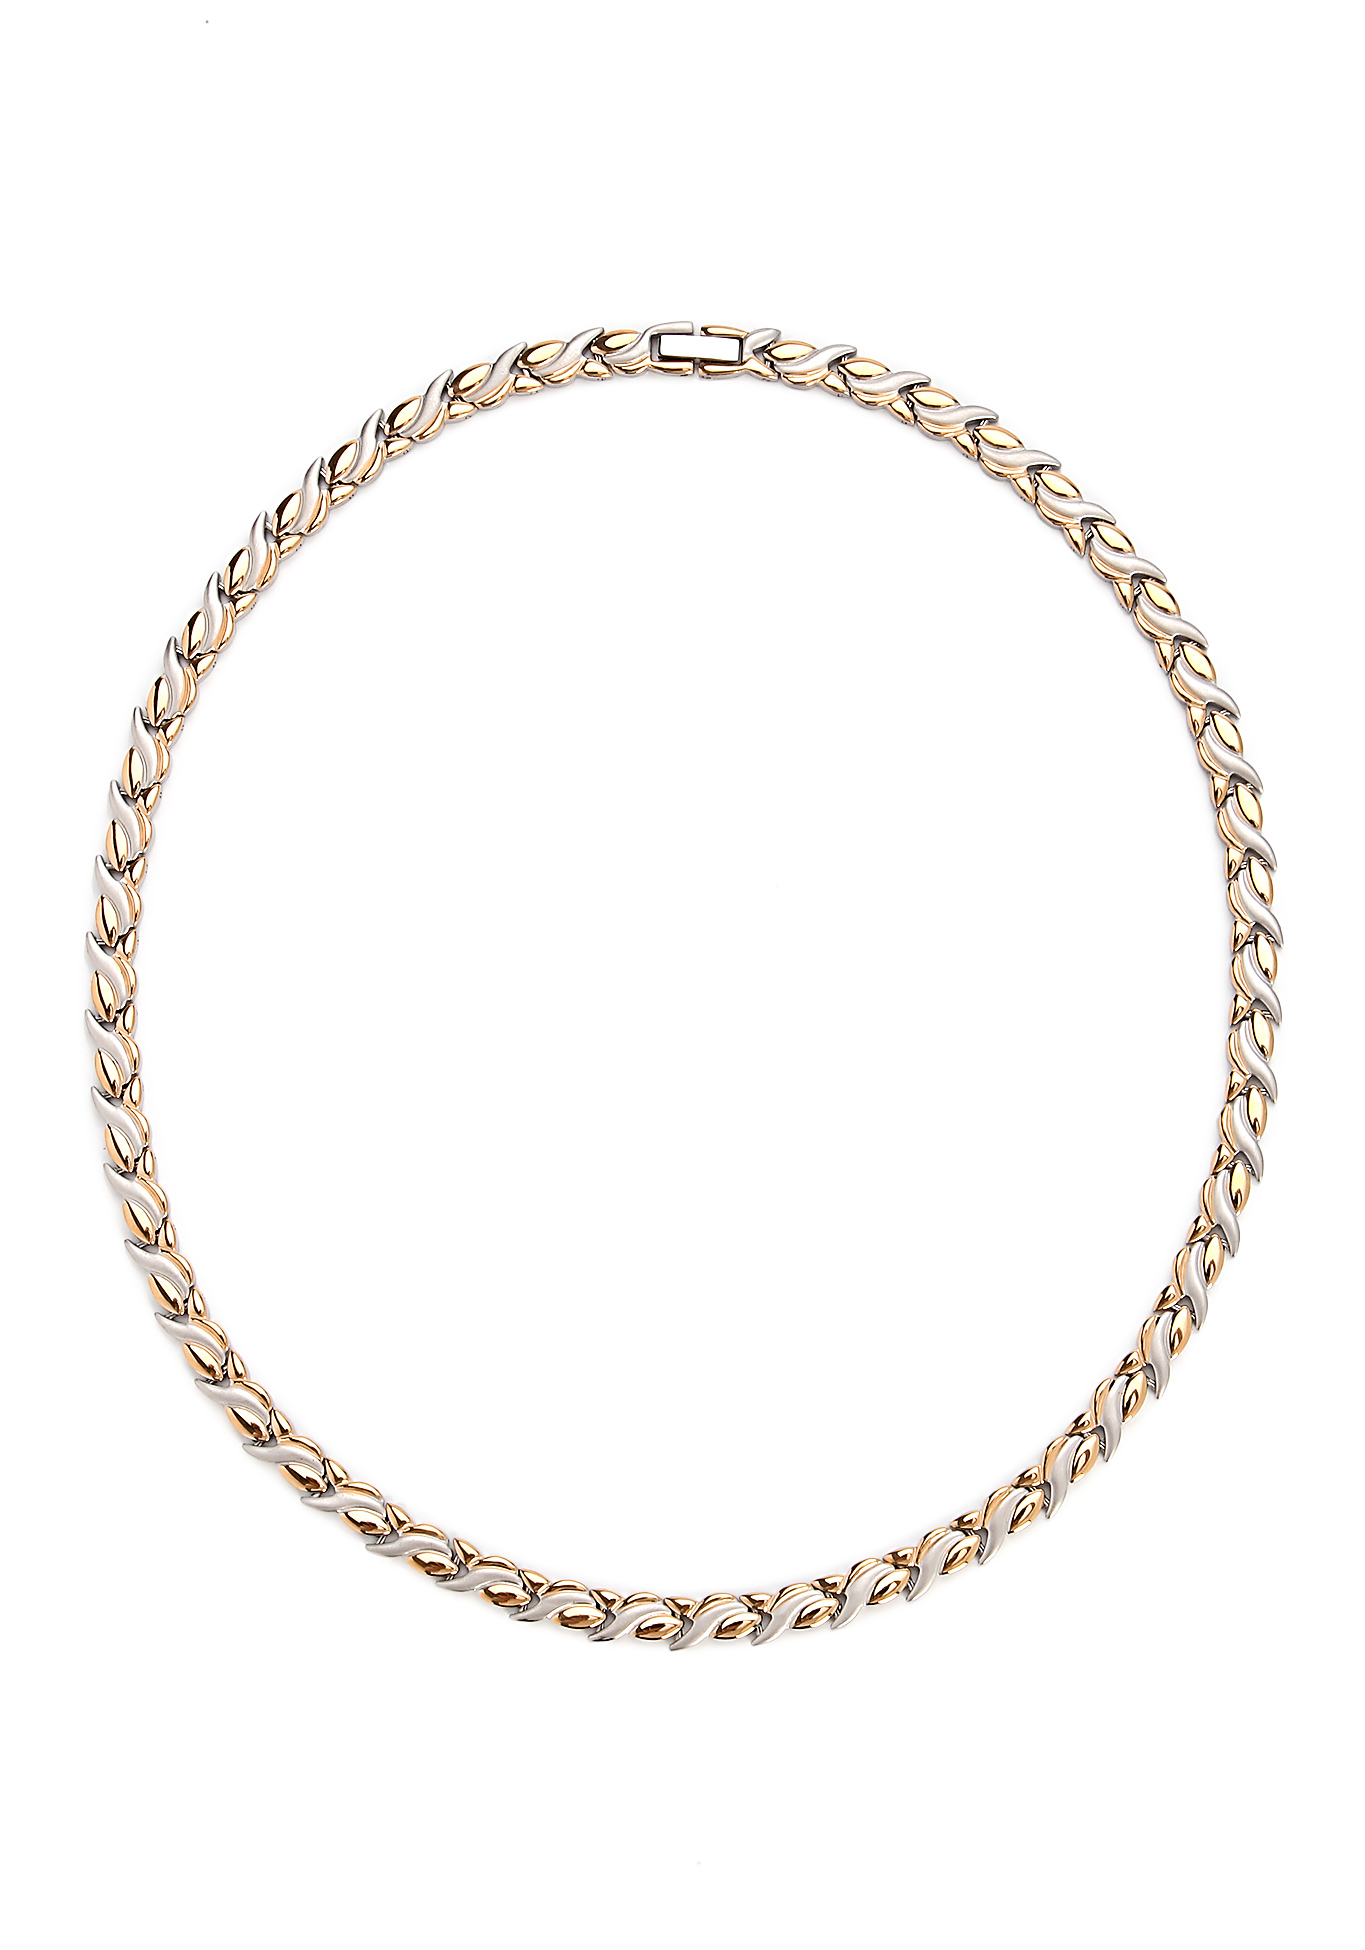 Фото - Магнитное ожерелье из стали Фелиция люстра штерн 114010308 фелиция